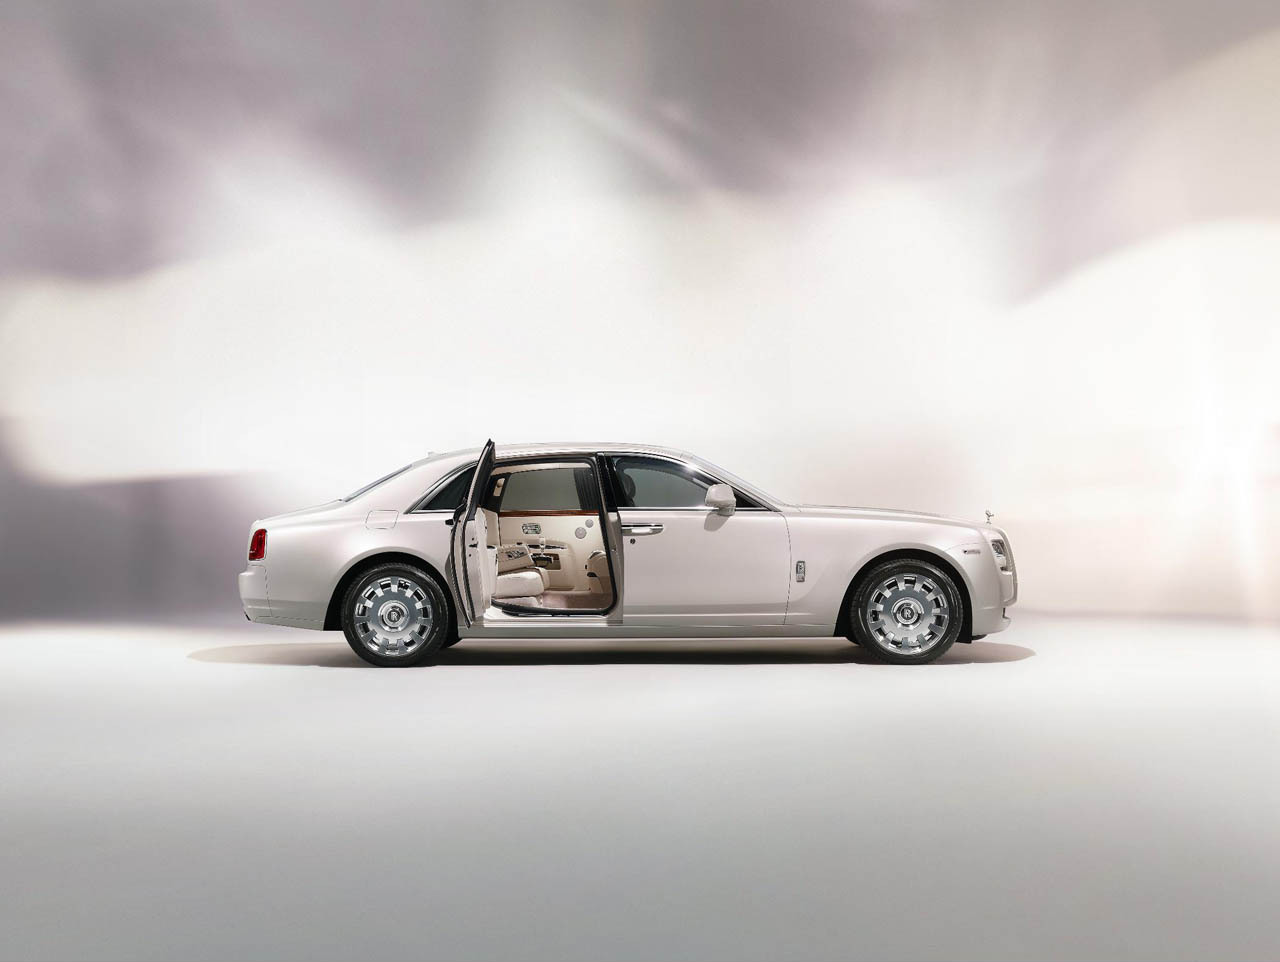 Inca nu sunt planuri privind productia in serie redusa a lui Rolls Royce Ghost Six Senses